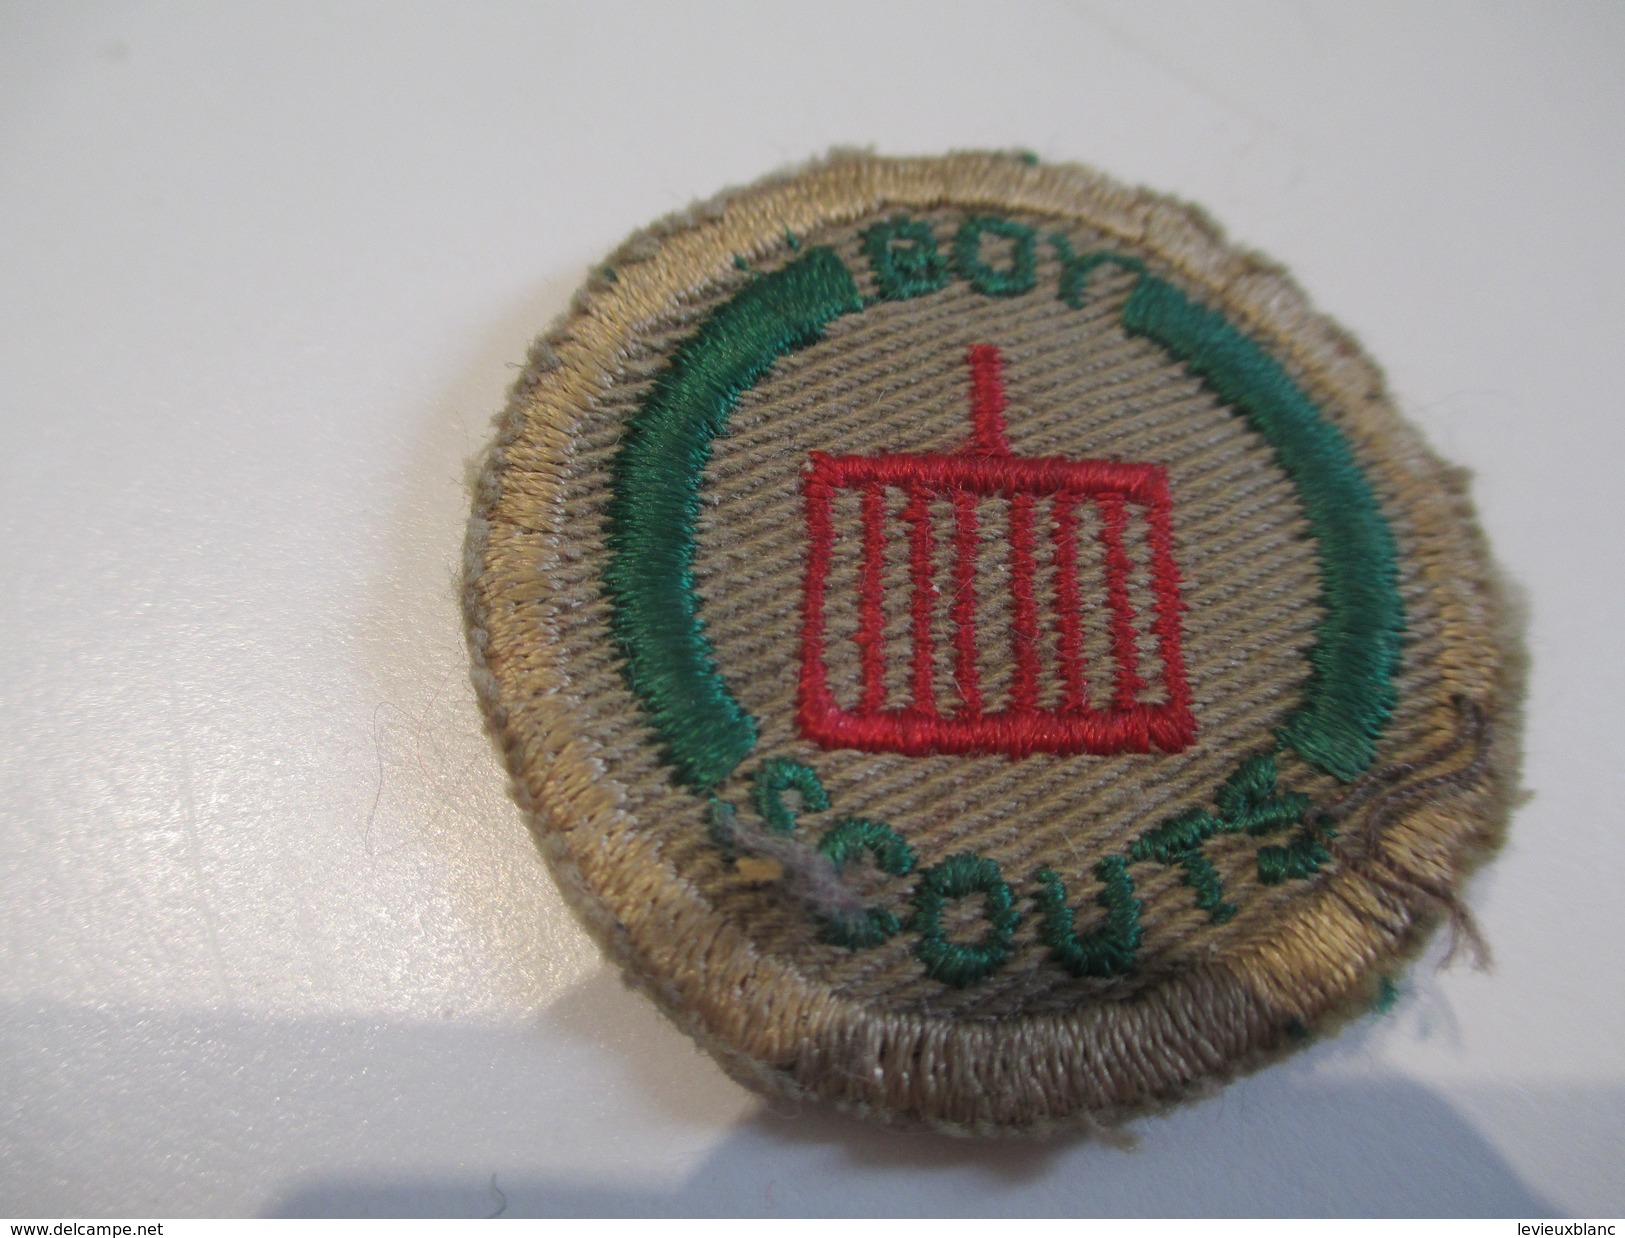 Ecusson Tissu Ancien /SCOUT/ CANADA /Grille / Boy Scouts/ Années 1950-1960   ET144 - Ecussons Tissu